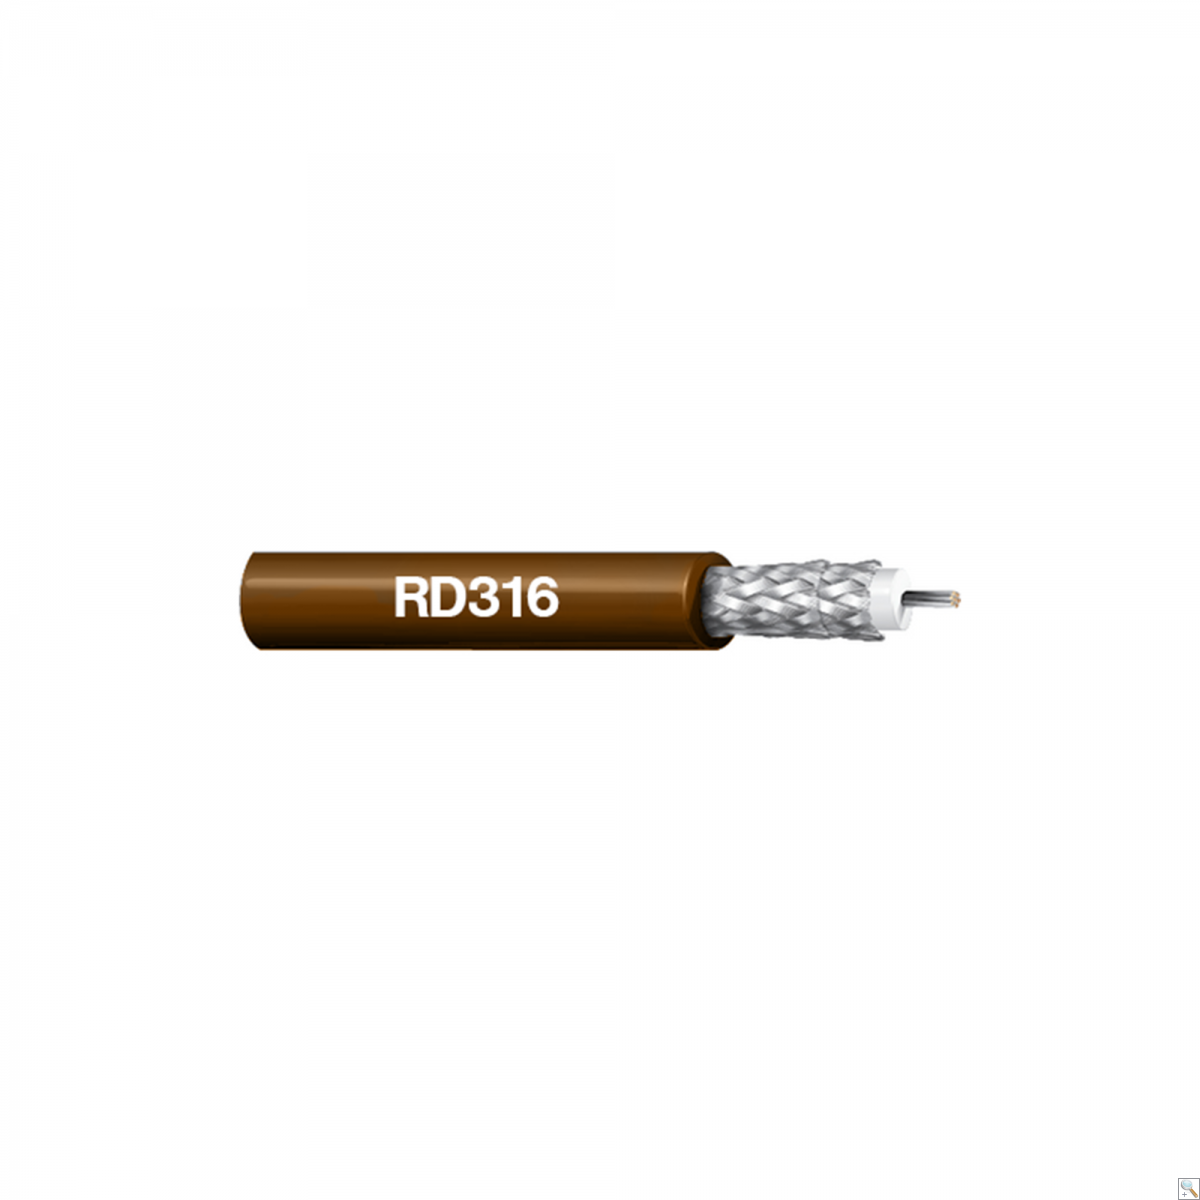 RD316 - 100M Reel